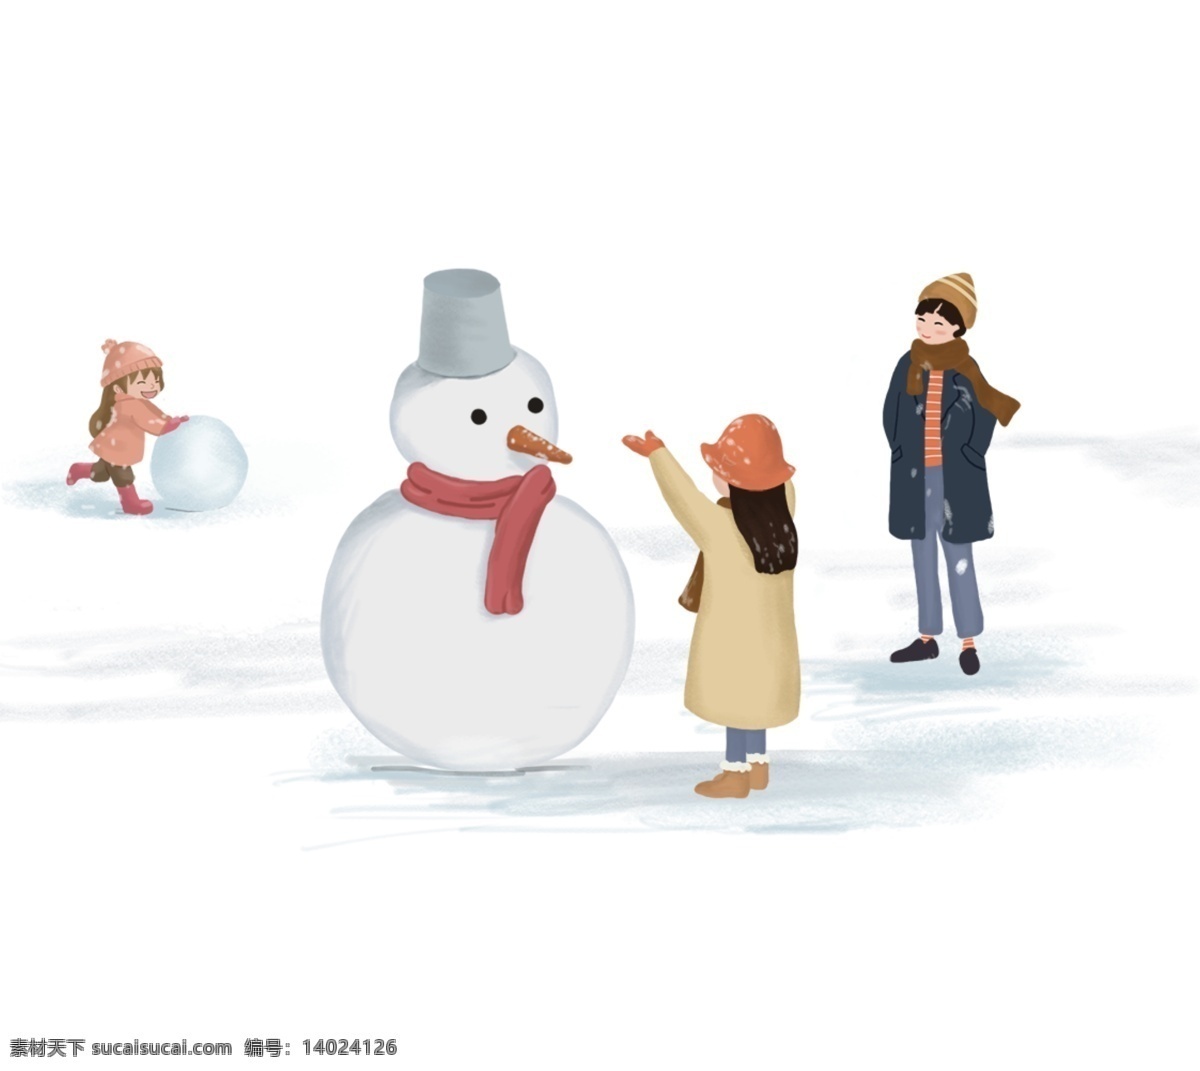 冬季 堆 雪人 主题 插画 卡通 手绘 精美 海报插画 广告插画 小清新 简约风 装饰图案